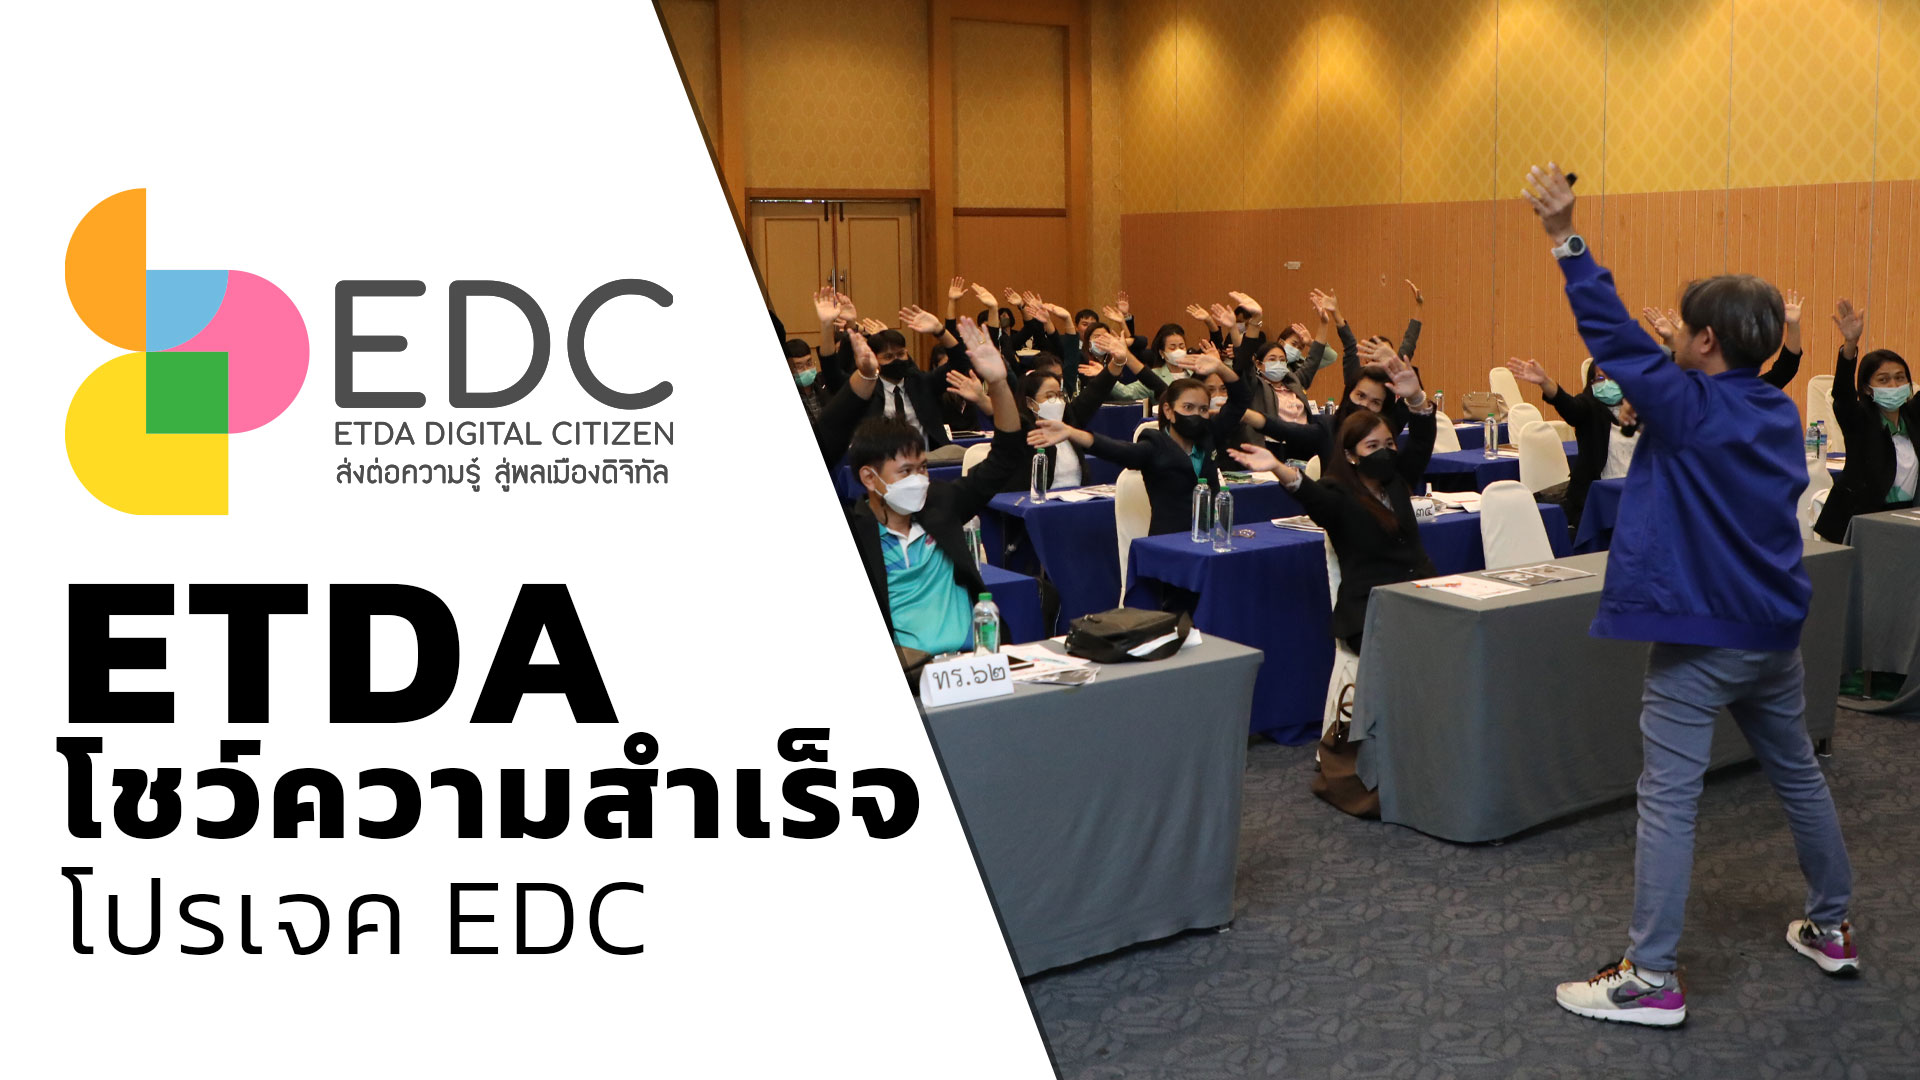 ETDA โชว์ความสำเร็จโปรเจค EDC  เสริมภูมิคนไทยรู้เท่าทันออนไลน์ 5,743 คน  สร้างเทรนเนอร์ดิจิทัล ส่งต่อความรู้สู่สังคม 259 คนETDA โชว์ความสำเร็จโปรเจค EDC  เสริมภูมิคนไทยรู้เท่าทันออนไลน์ 5,743 คน  สร้างเทรนเนอร์ดิจิทัล ส่งต่อความรู้สู่สังคม 259 คน